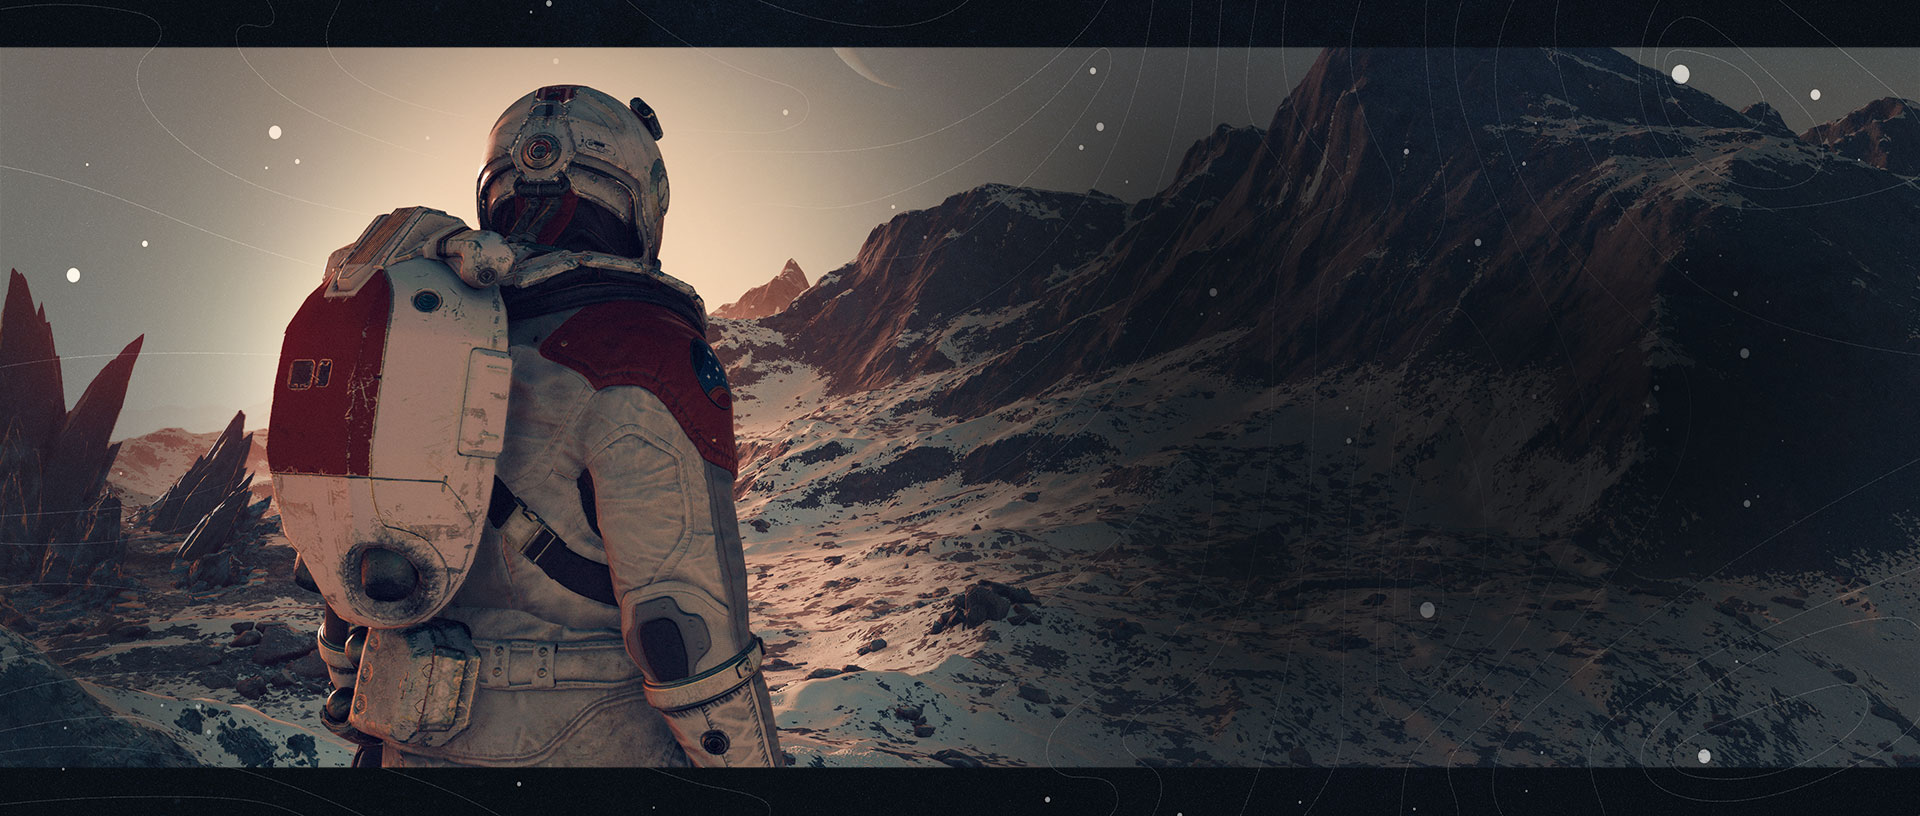 Um explorador olha para os topos das montanhas nevadas enquanto um planeta anelado se ergue no céu.